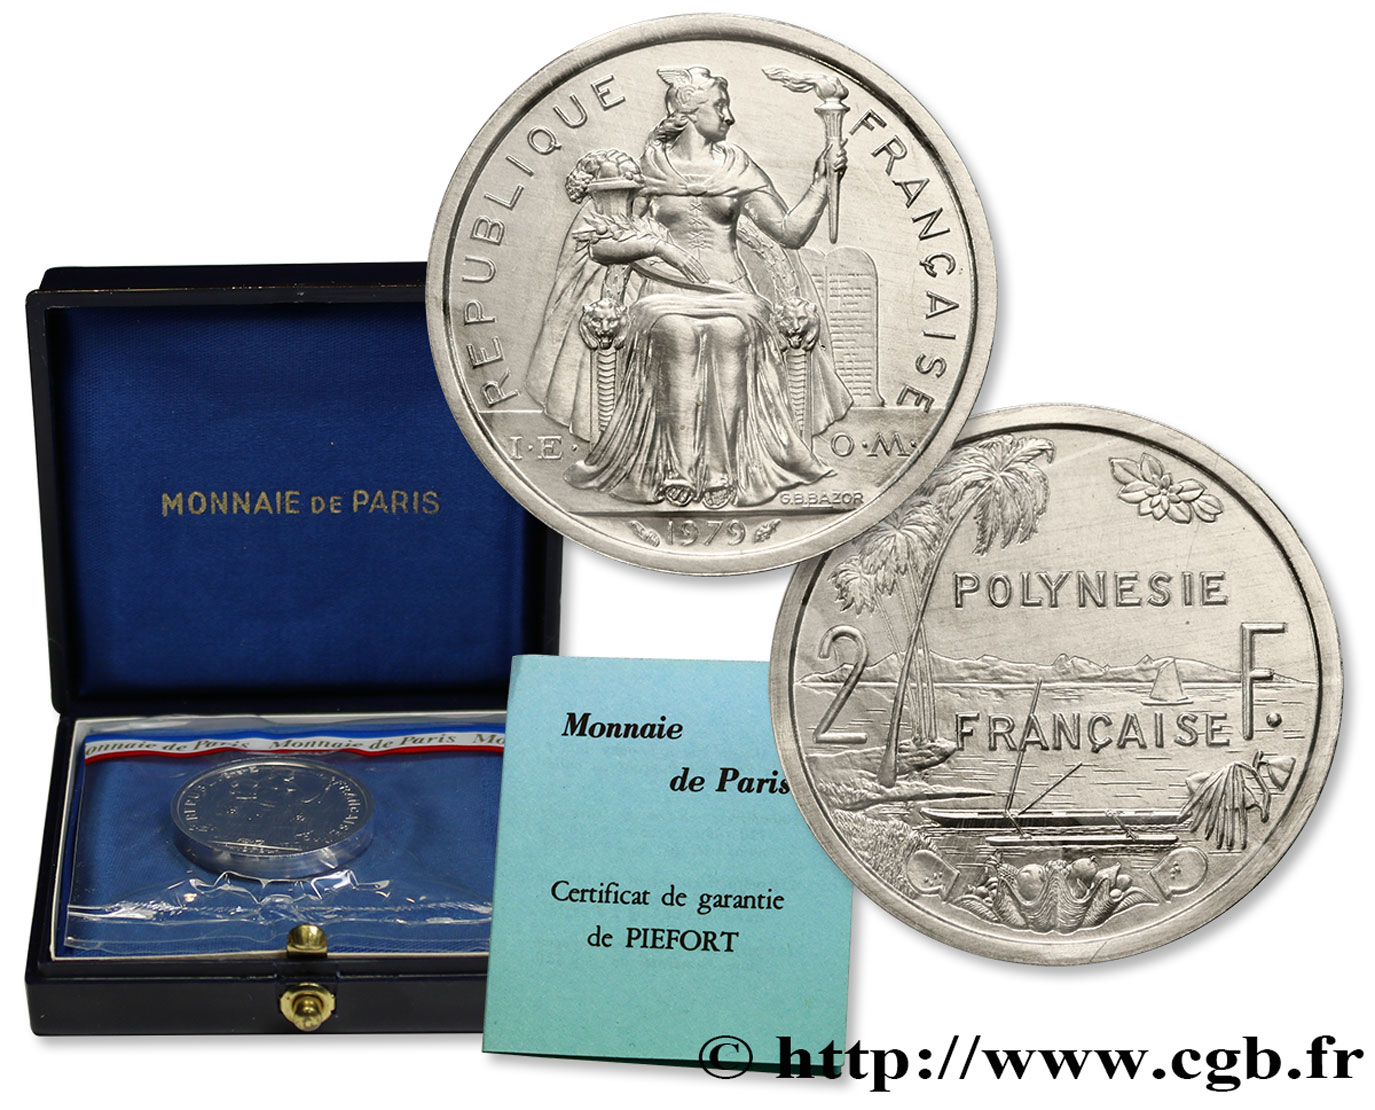 FRENCH POLYNESIA Piéfort de 2 Francs I.E.O.M. 1979 Paris MS 